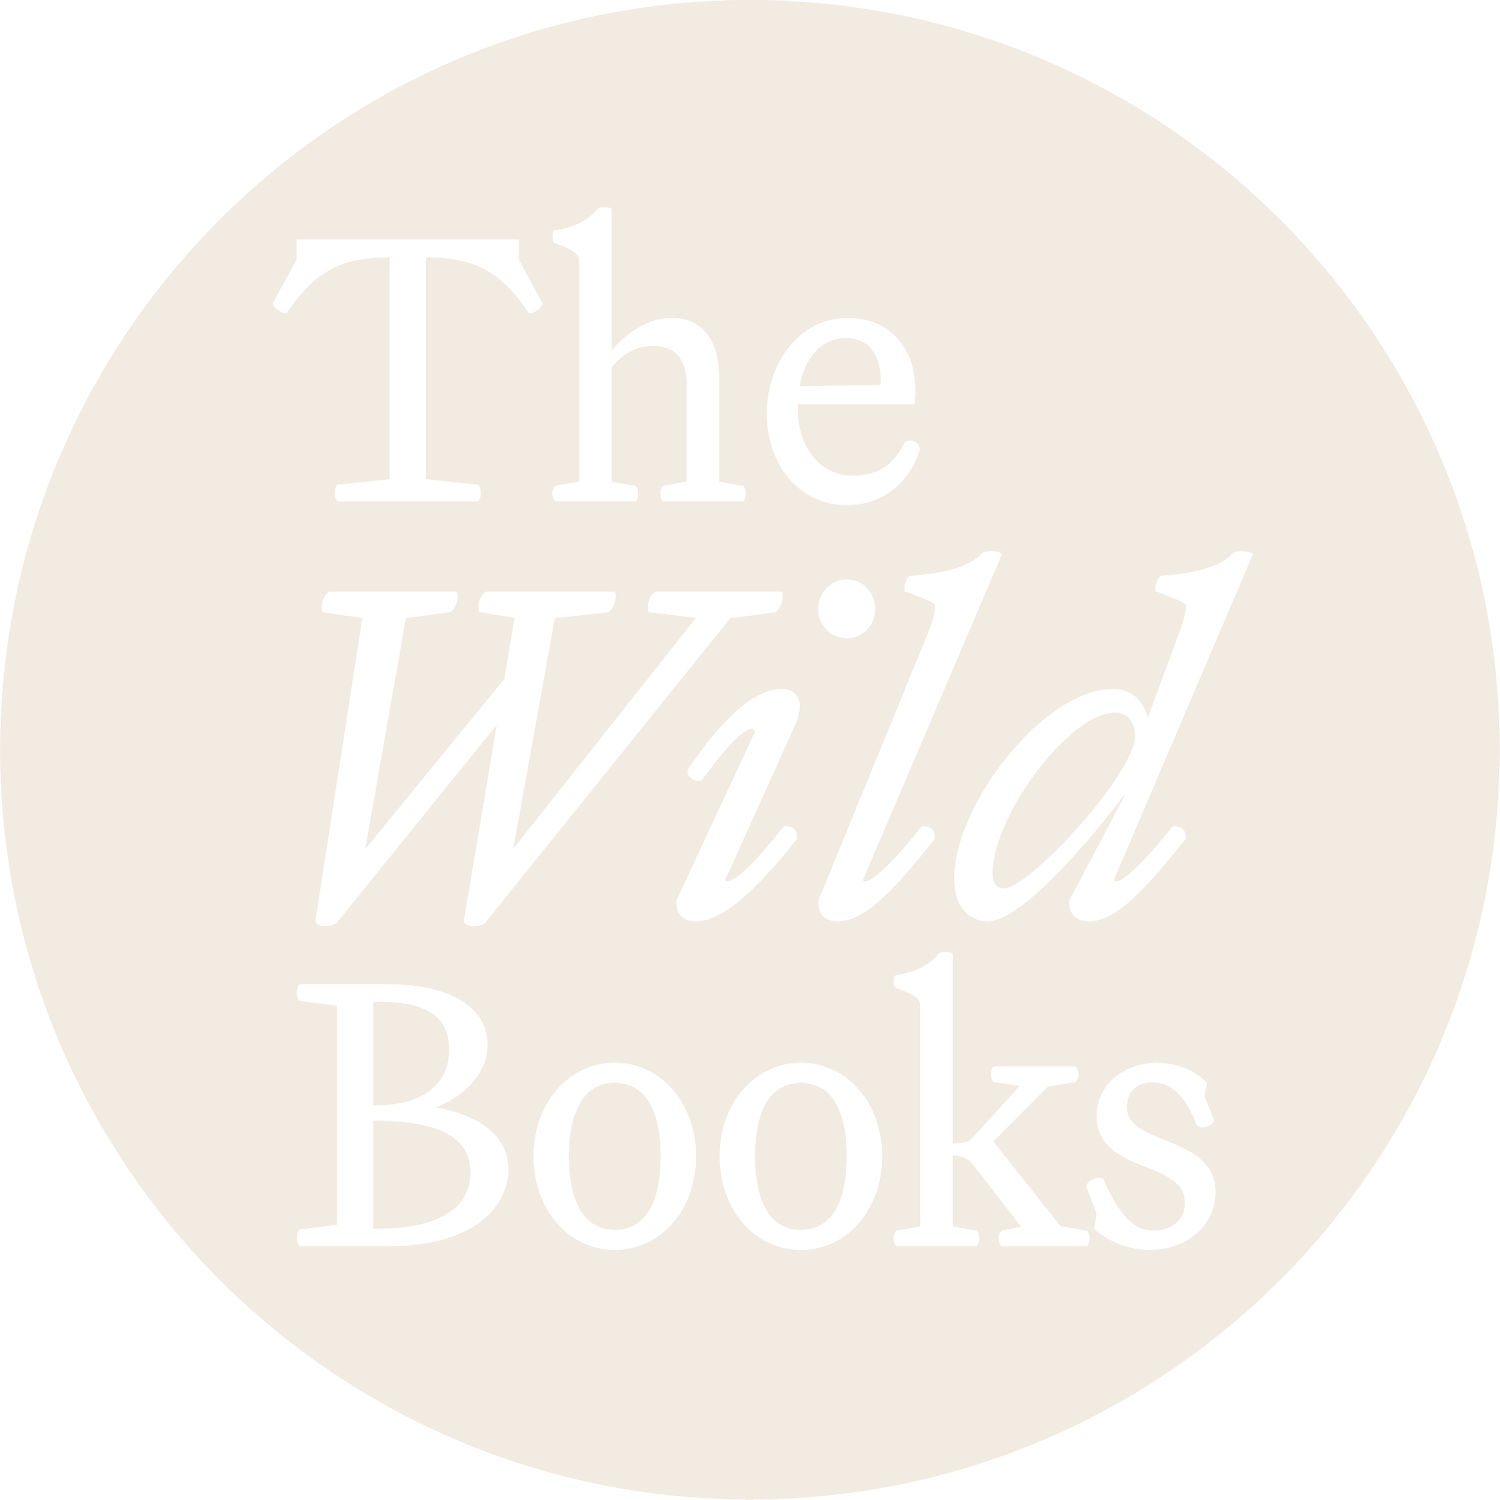 www.thewildbooks.com